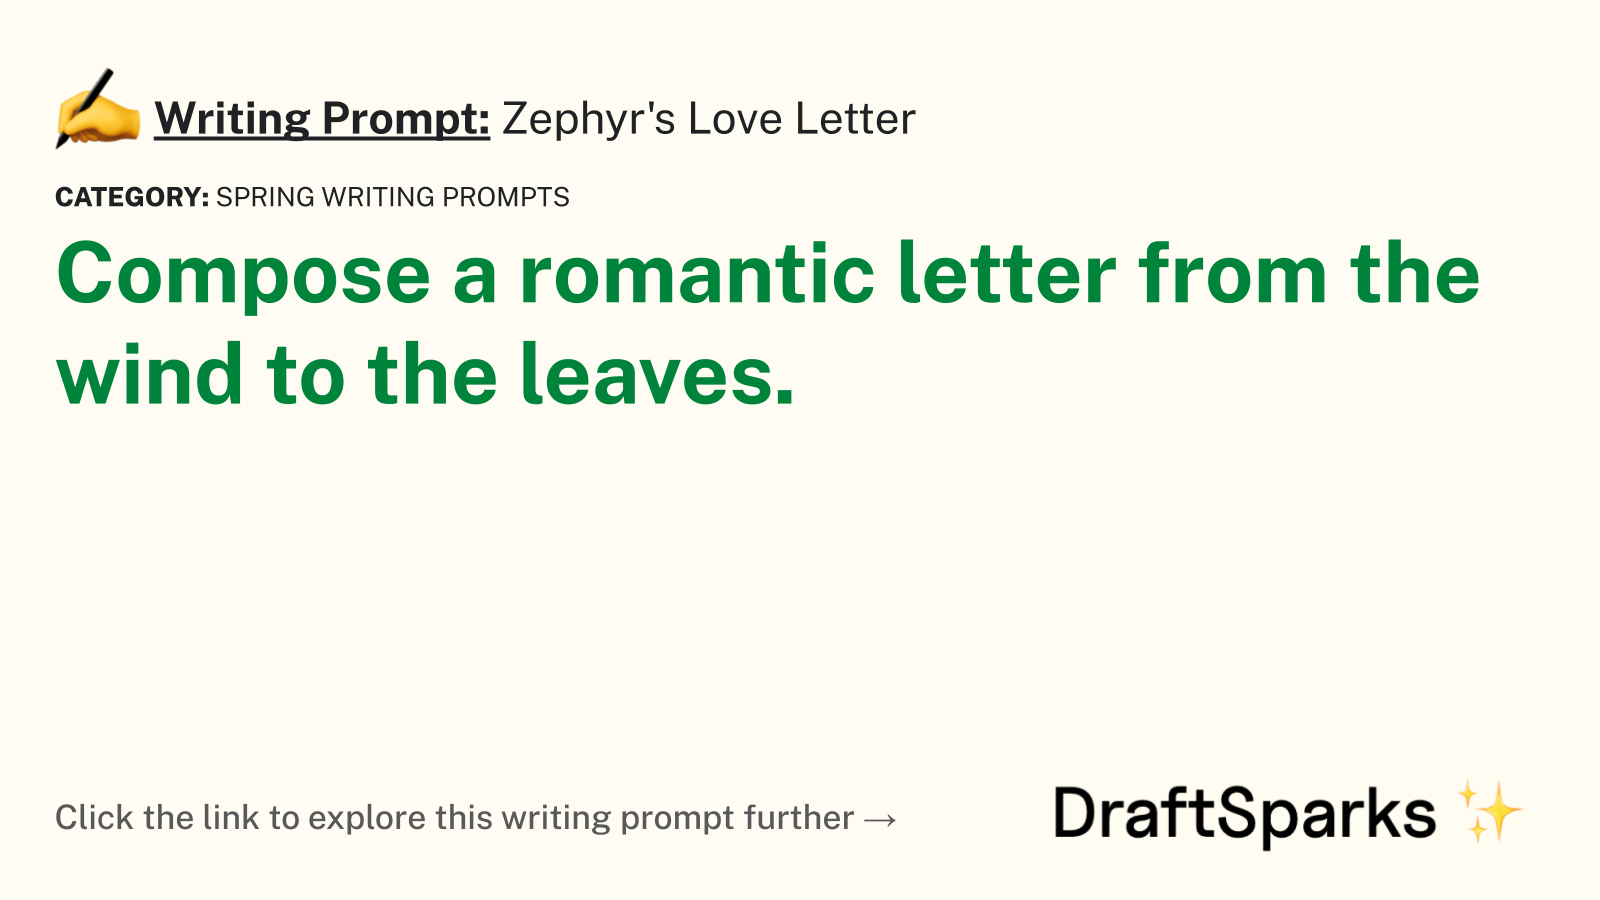 Zephyr’s Love Letter